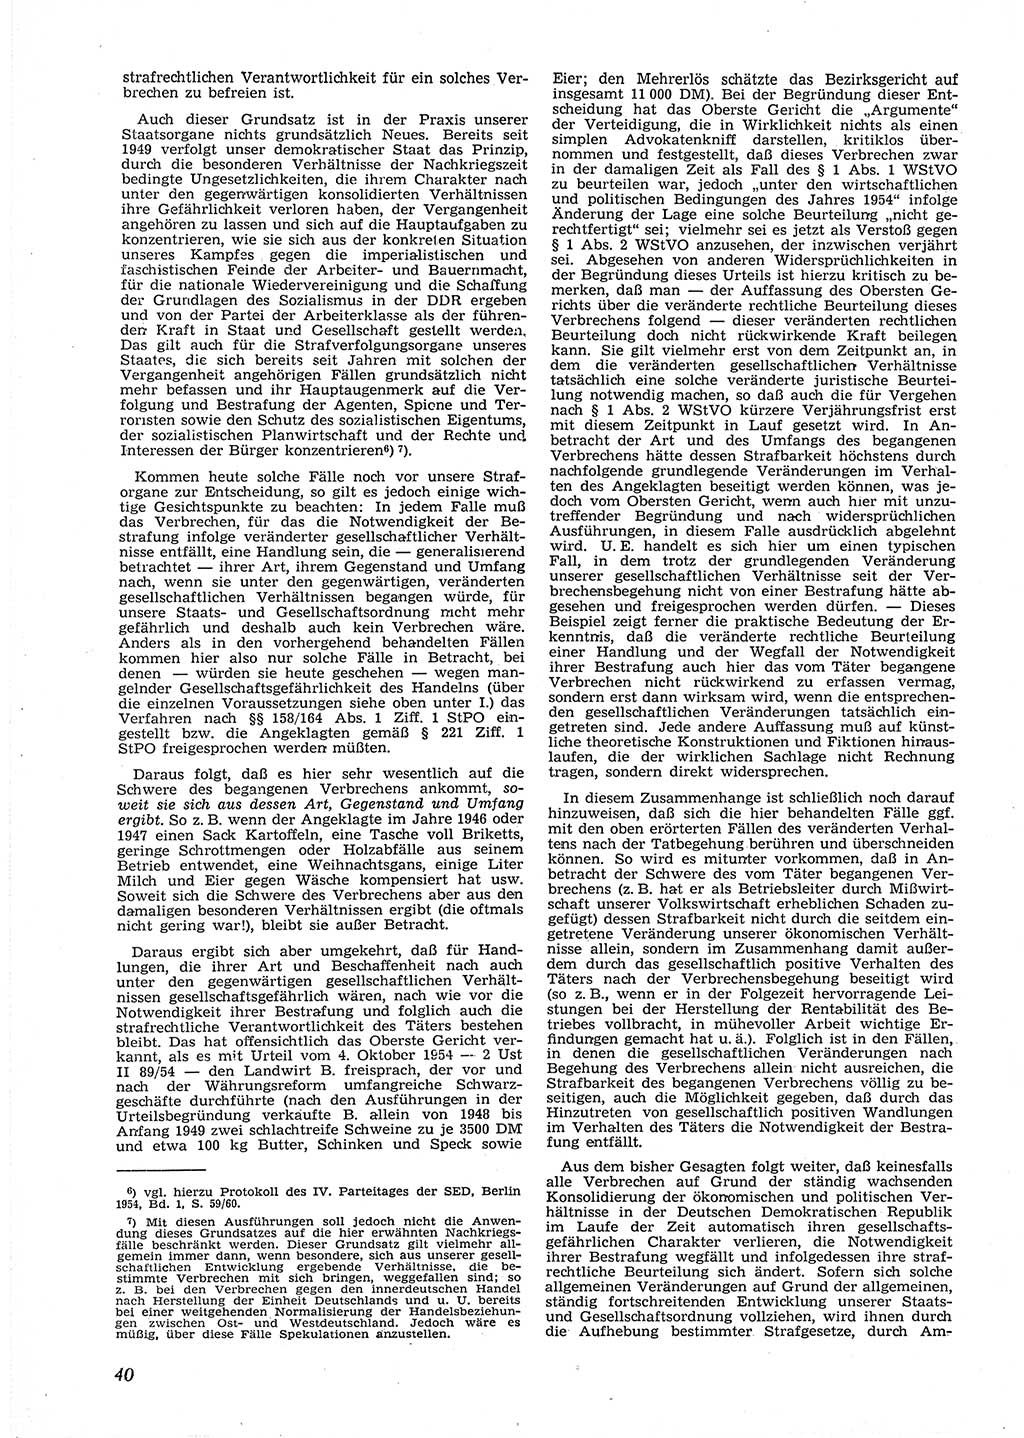 Neue Justiz (NJ), Zeitschrift für Recht und Rechtswissenschaft [Deutsche Demokratische Republik (DDR)], 9. Jahrgang 1955, Seite 40 (NJ DDR 1955, S. 40)